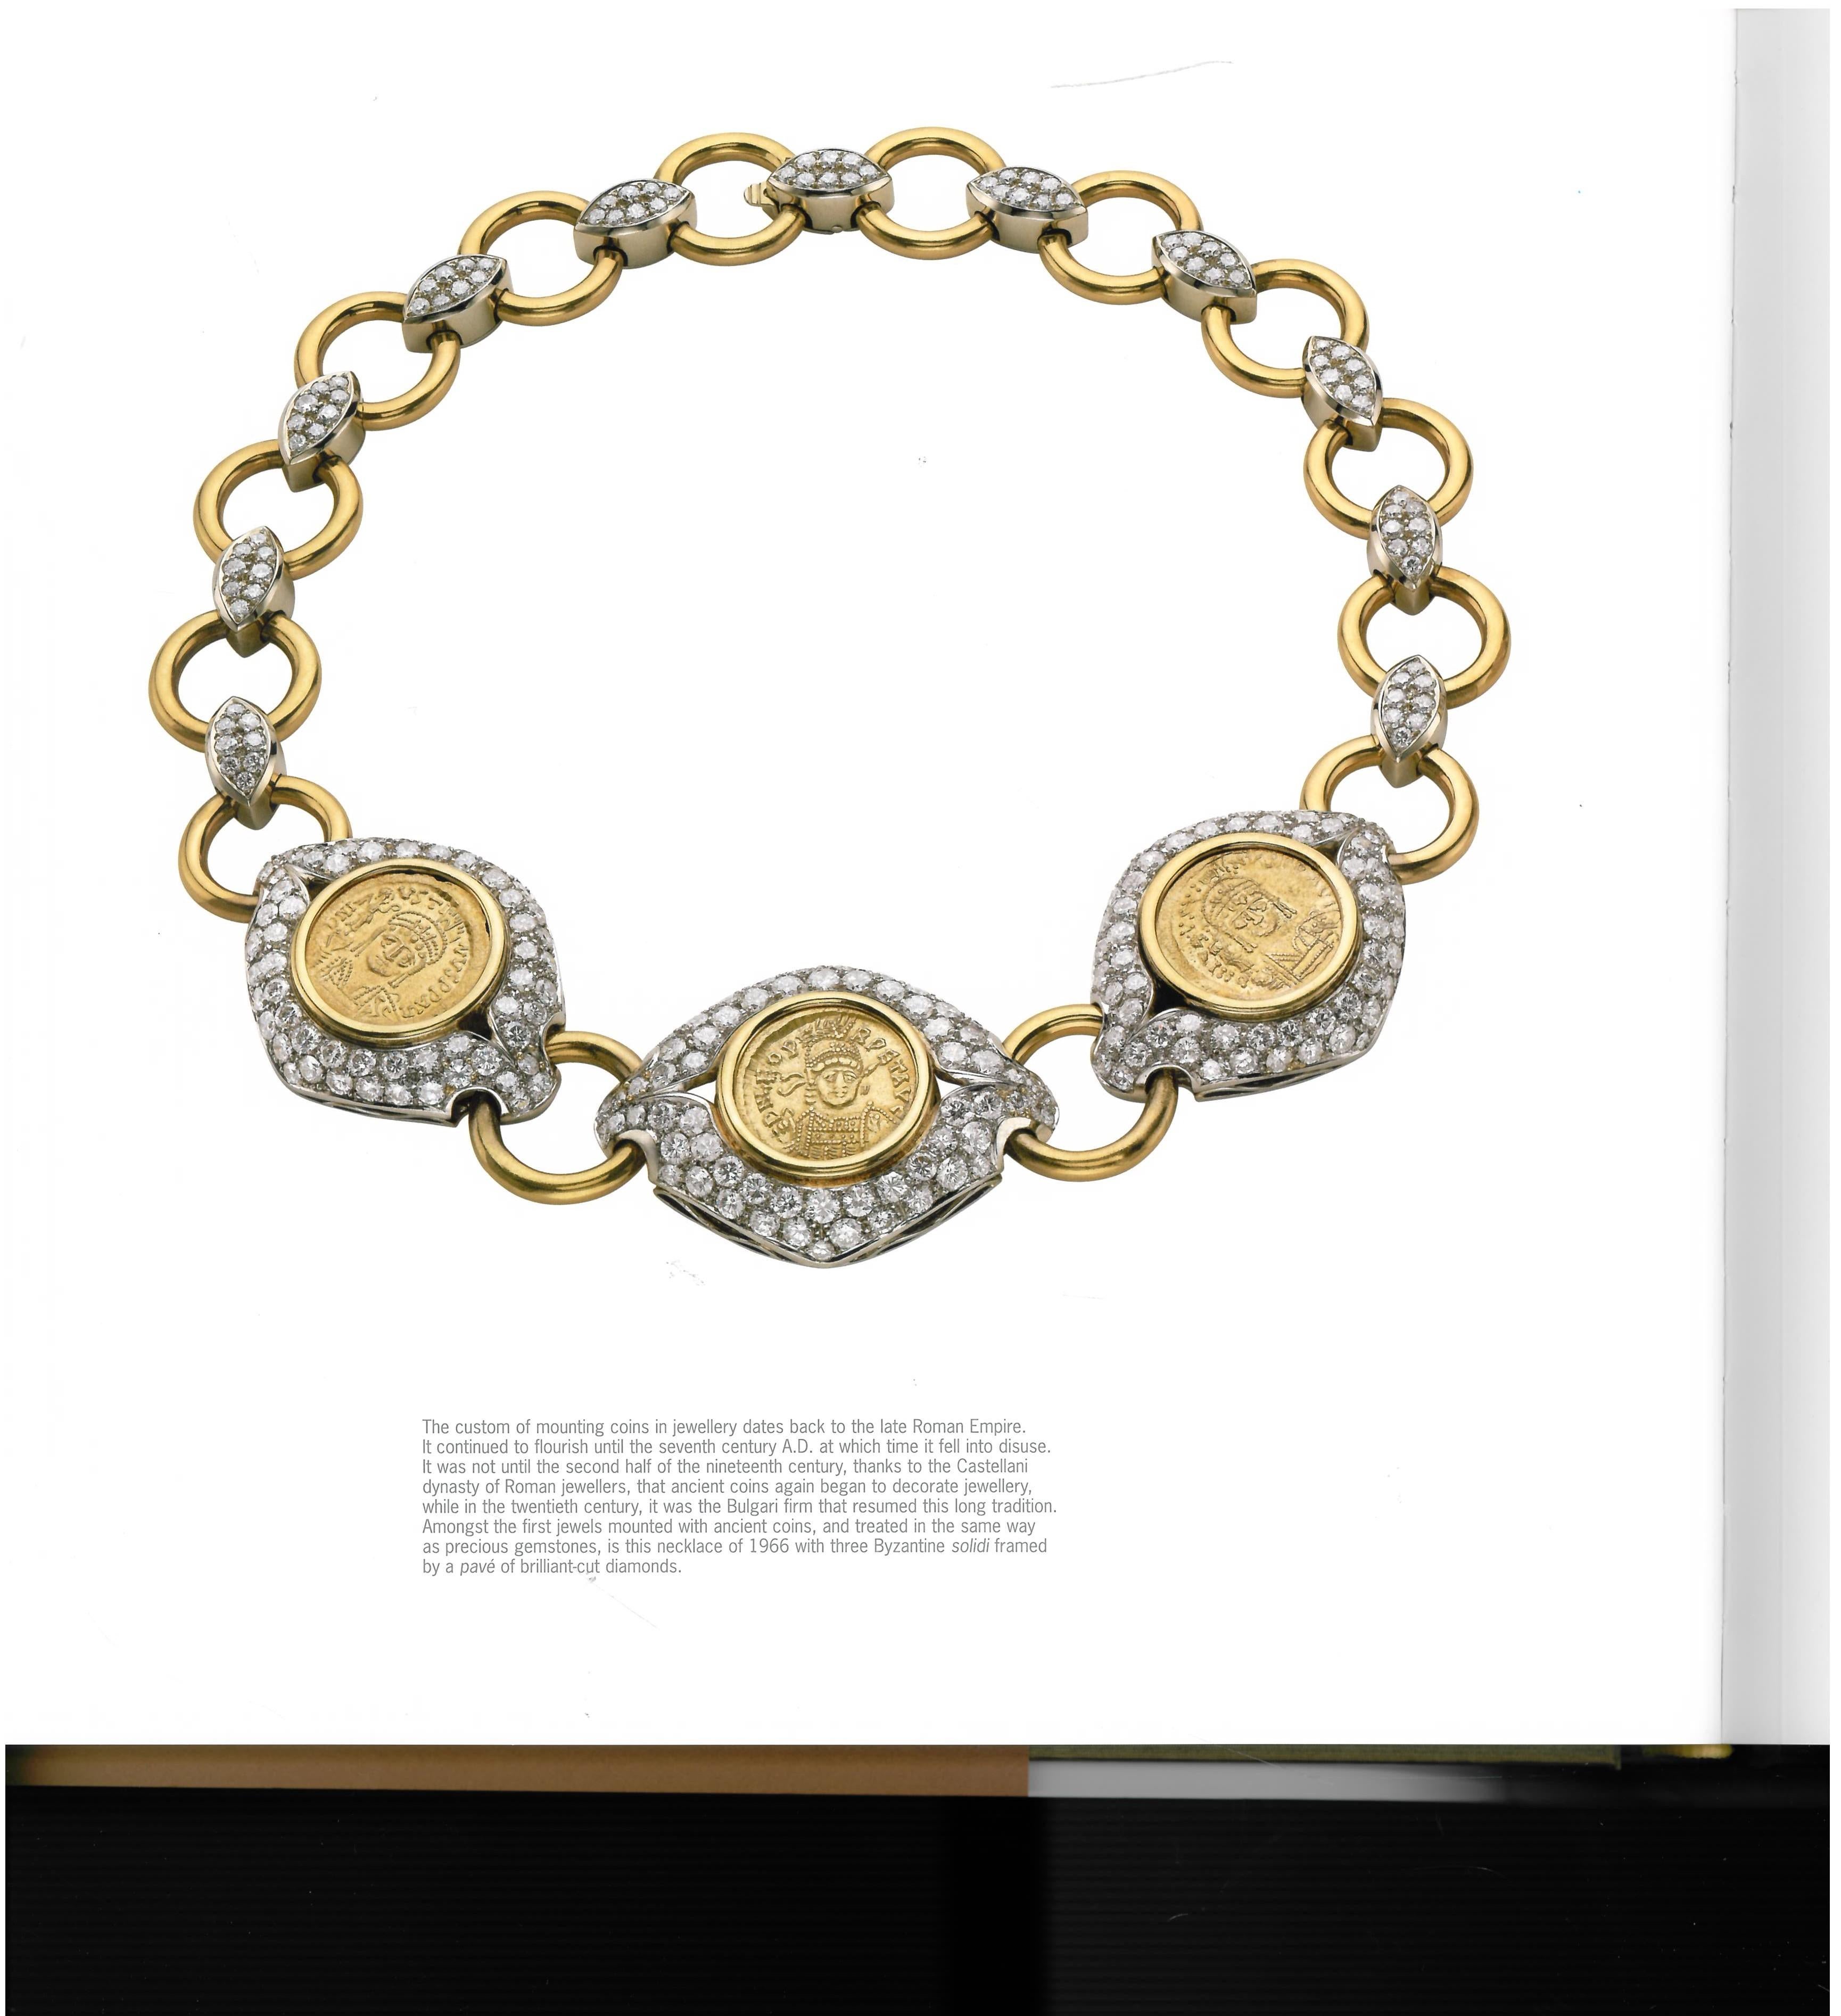 Bulgari, from 1884-2009, 125 Years of Italian Jewels, 'Book' 2